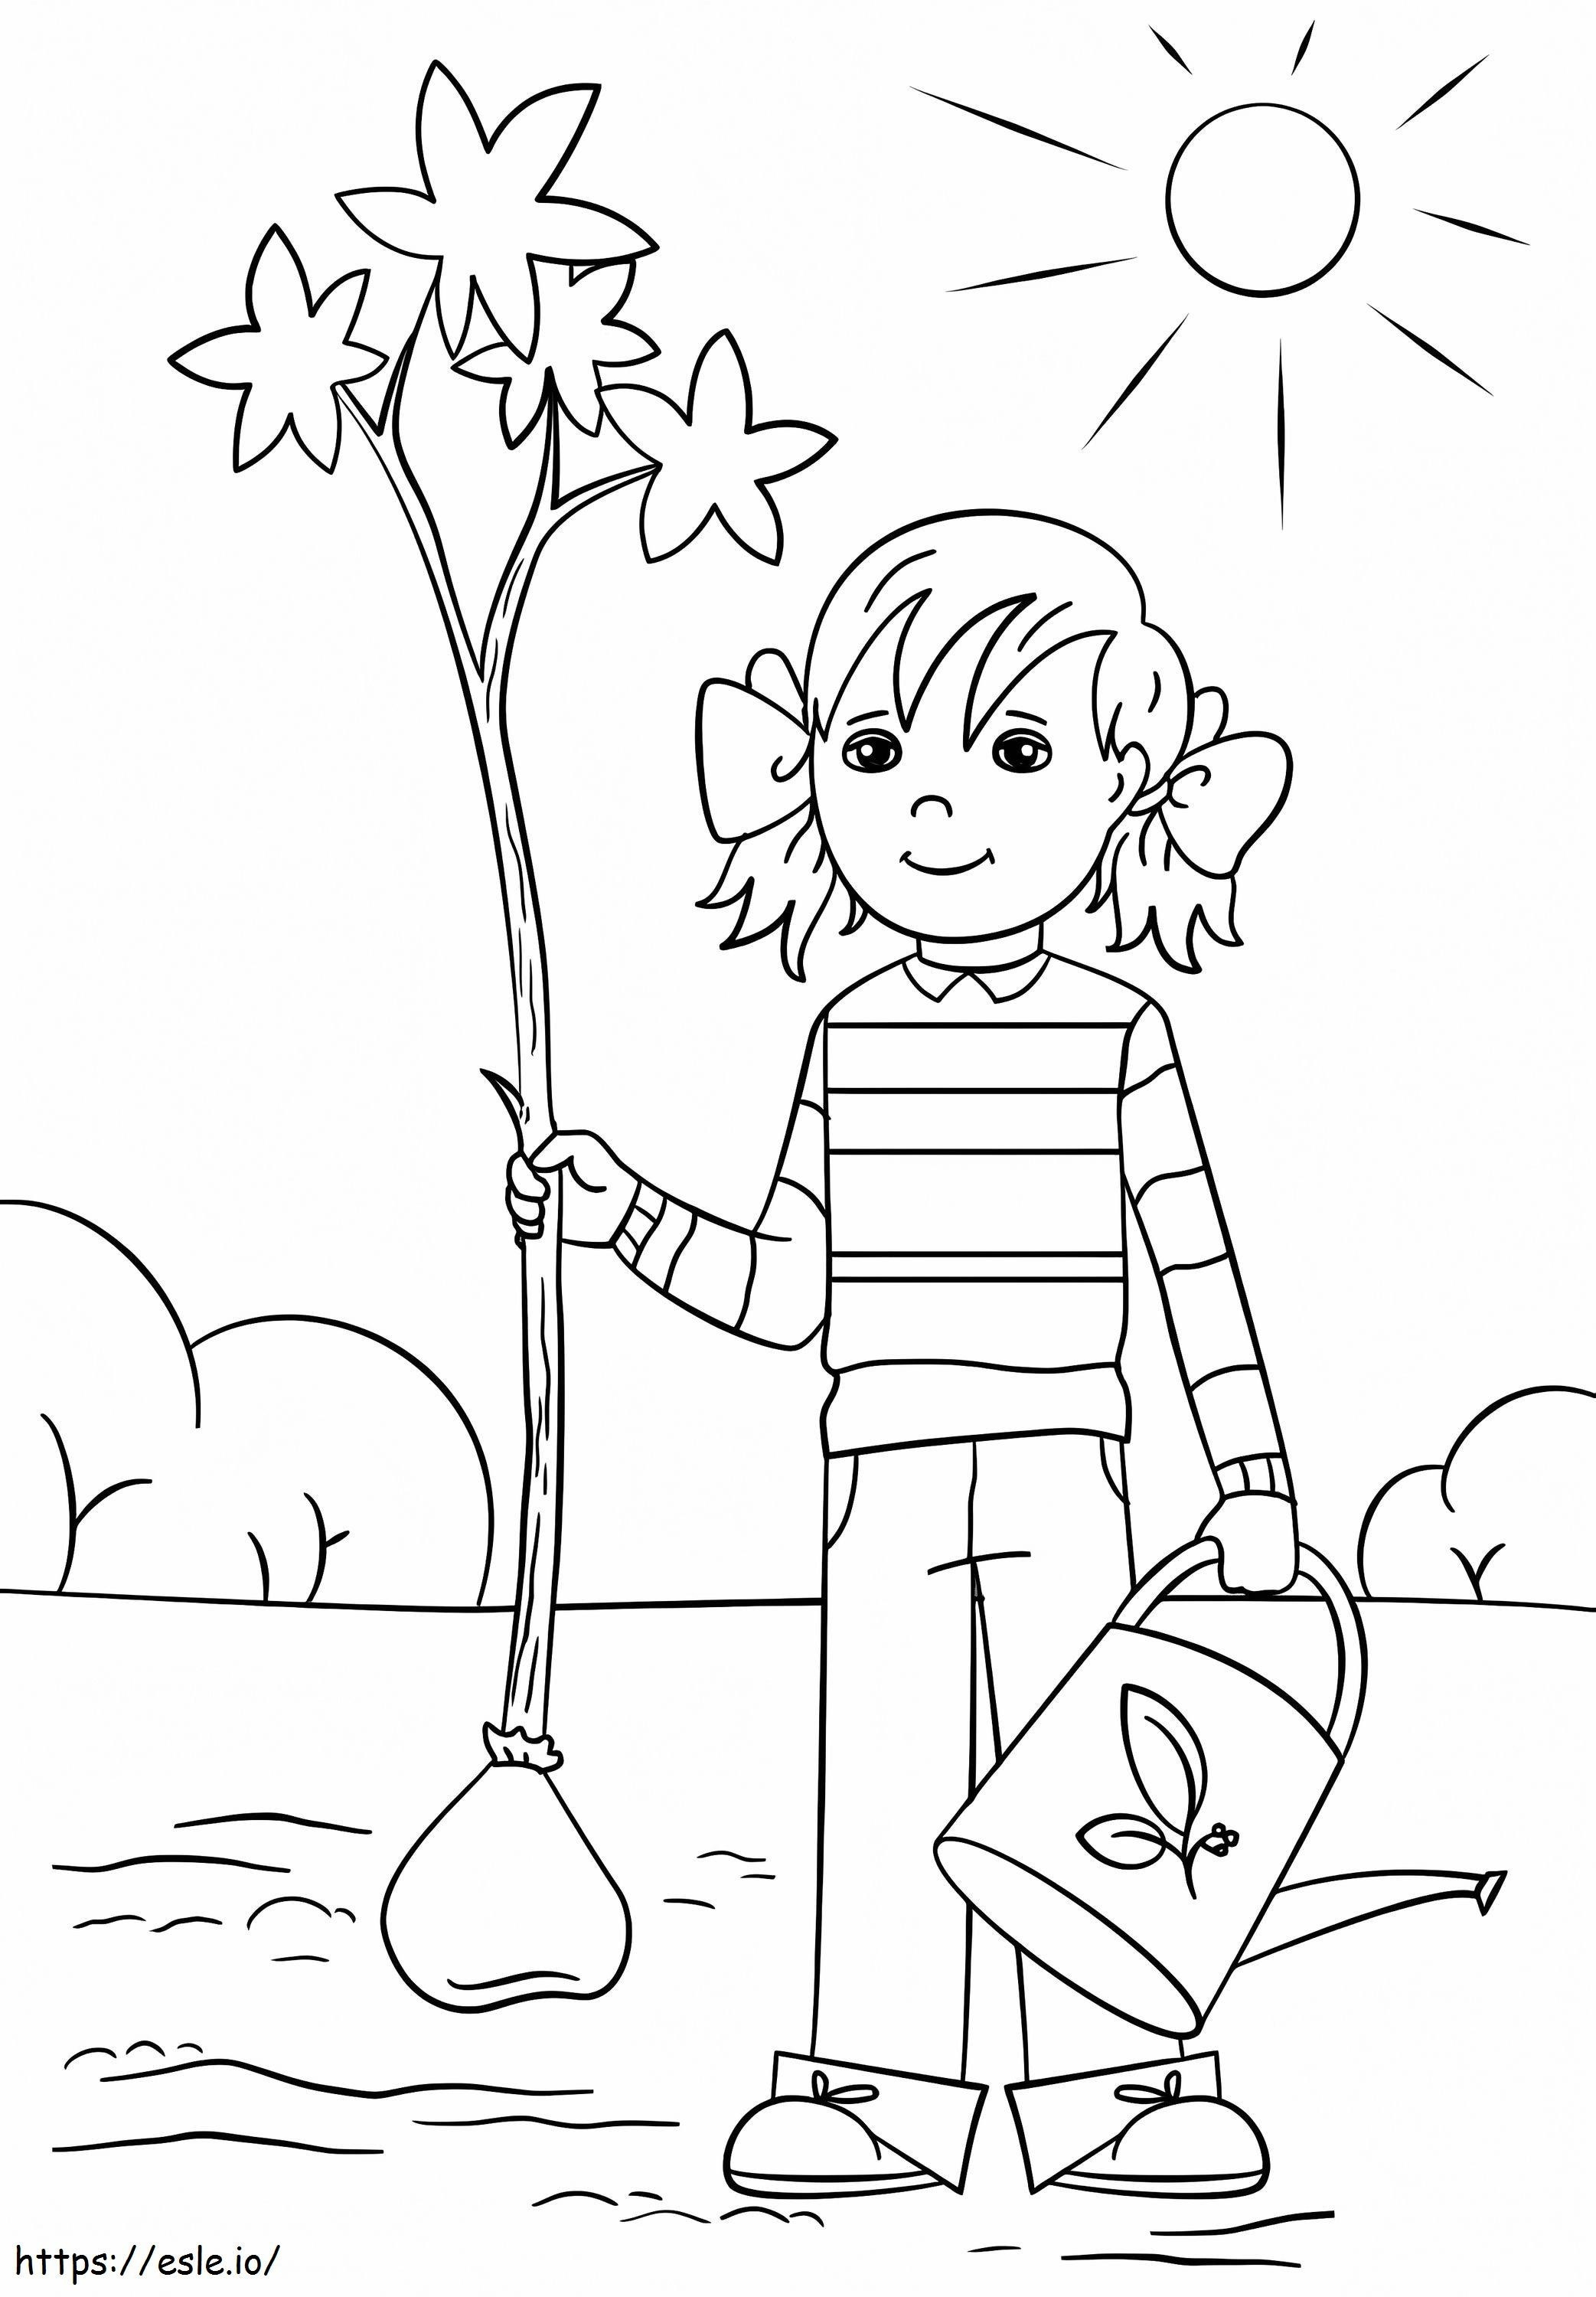 Garota no dia da árvore para colorir